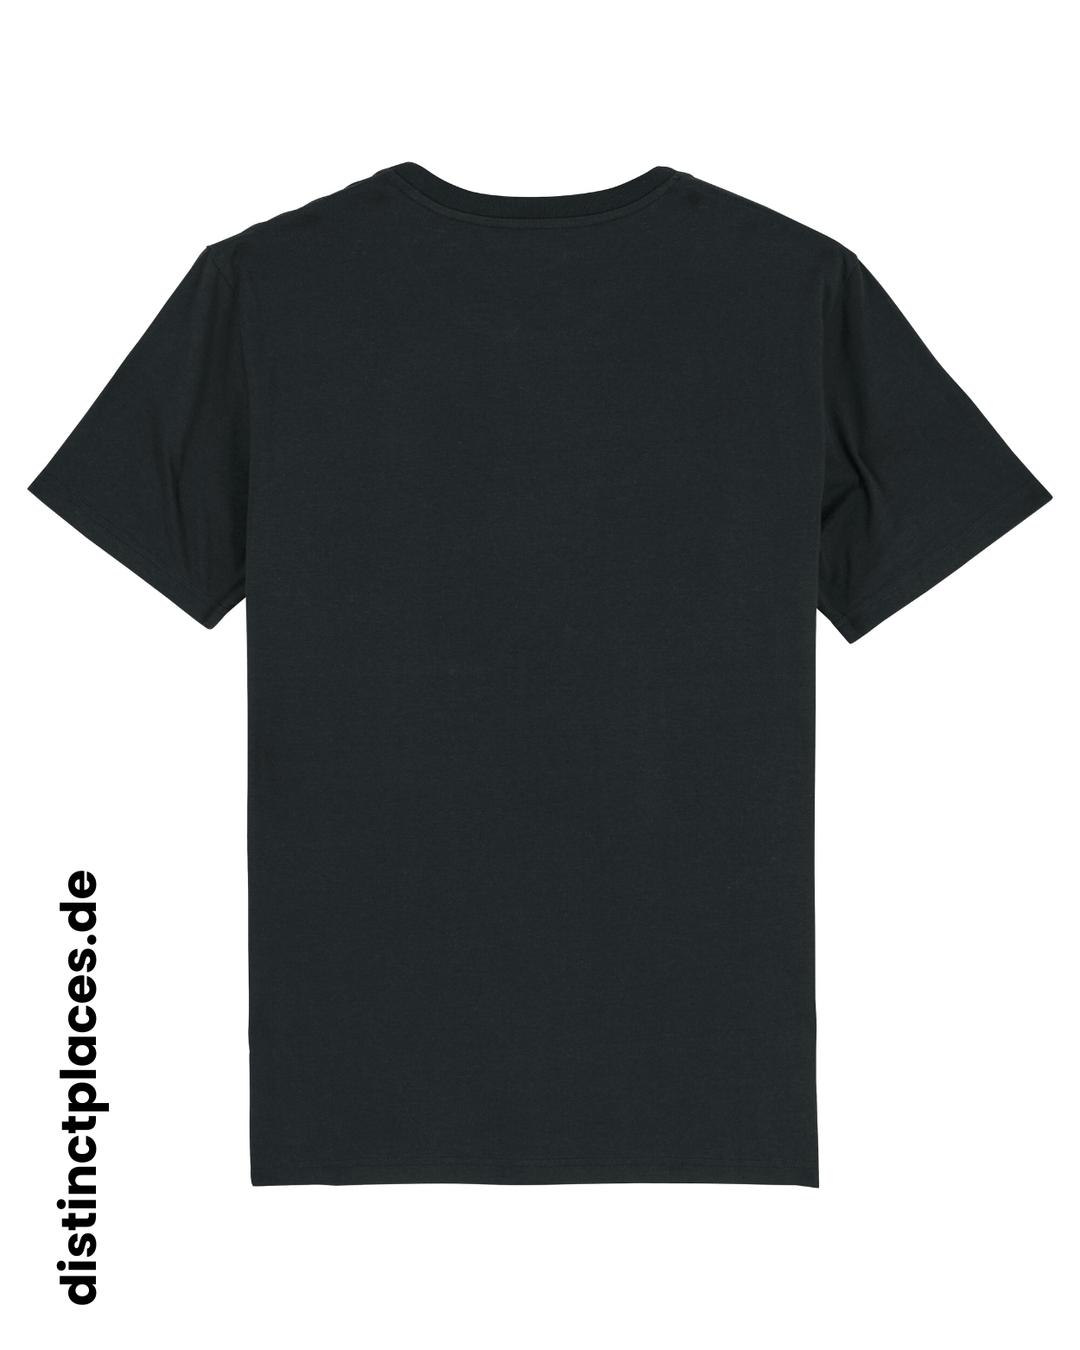 Schwarzes fairtrade, vegan und bio-baumwoll T-Shirt von hinten mit einem minimalistischem weißen Logo, beziehungsweise Schriftzug für Saarland